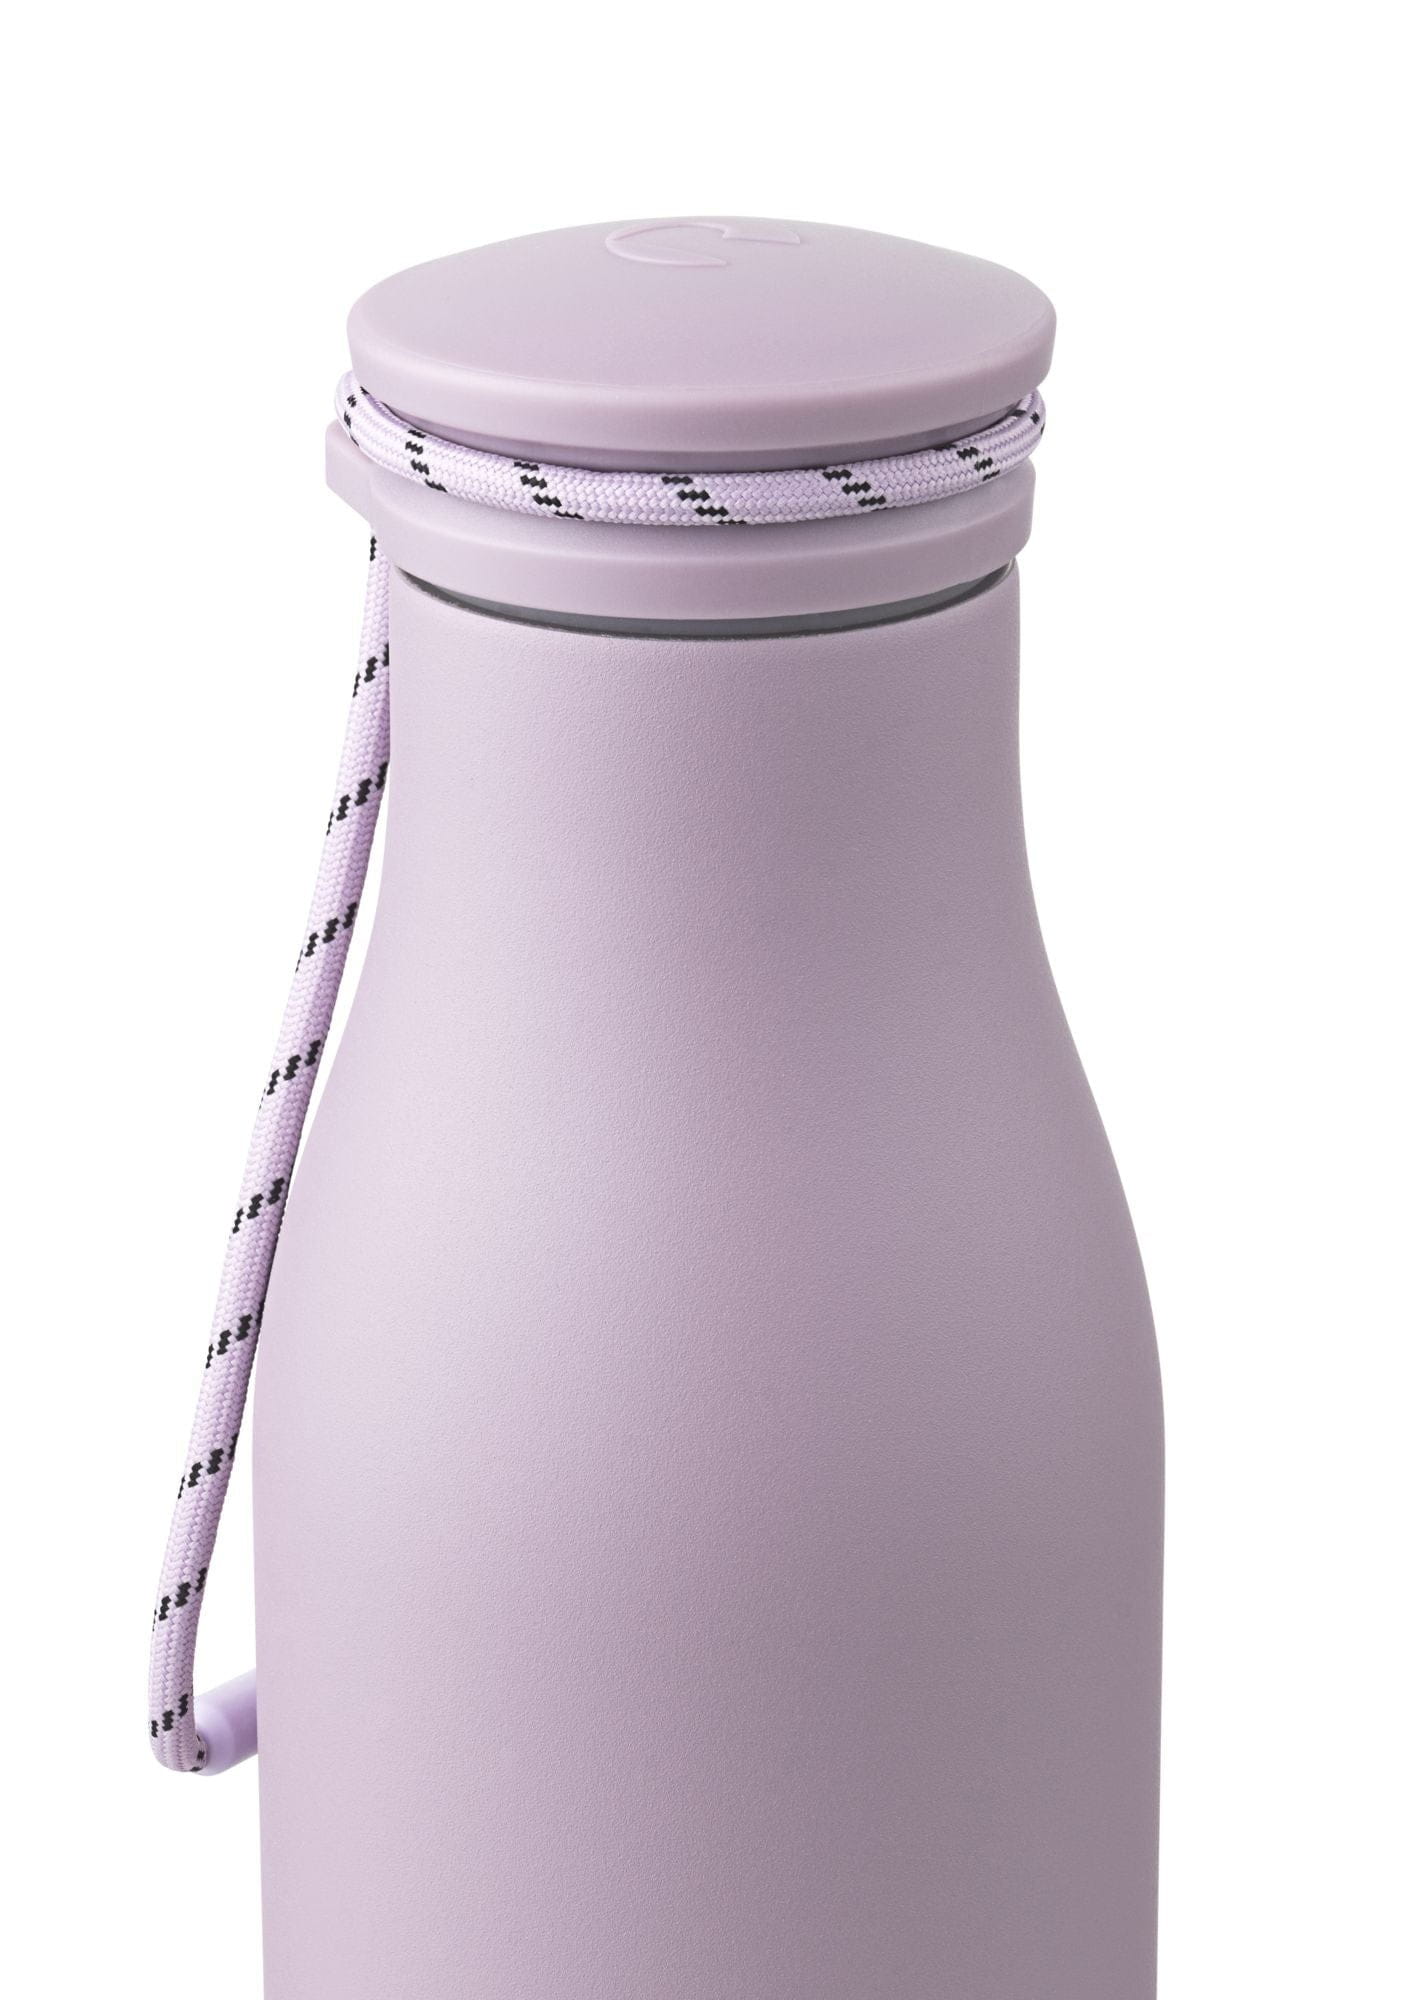 Rosendahl Gc Outdoor Thermos Water Bottle 500 Ml, Purple